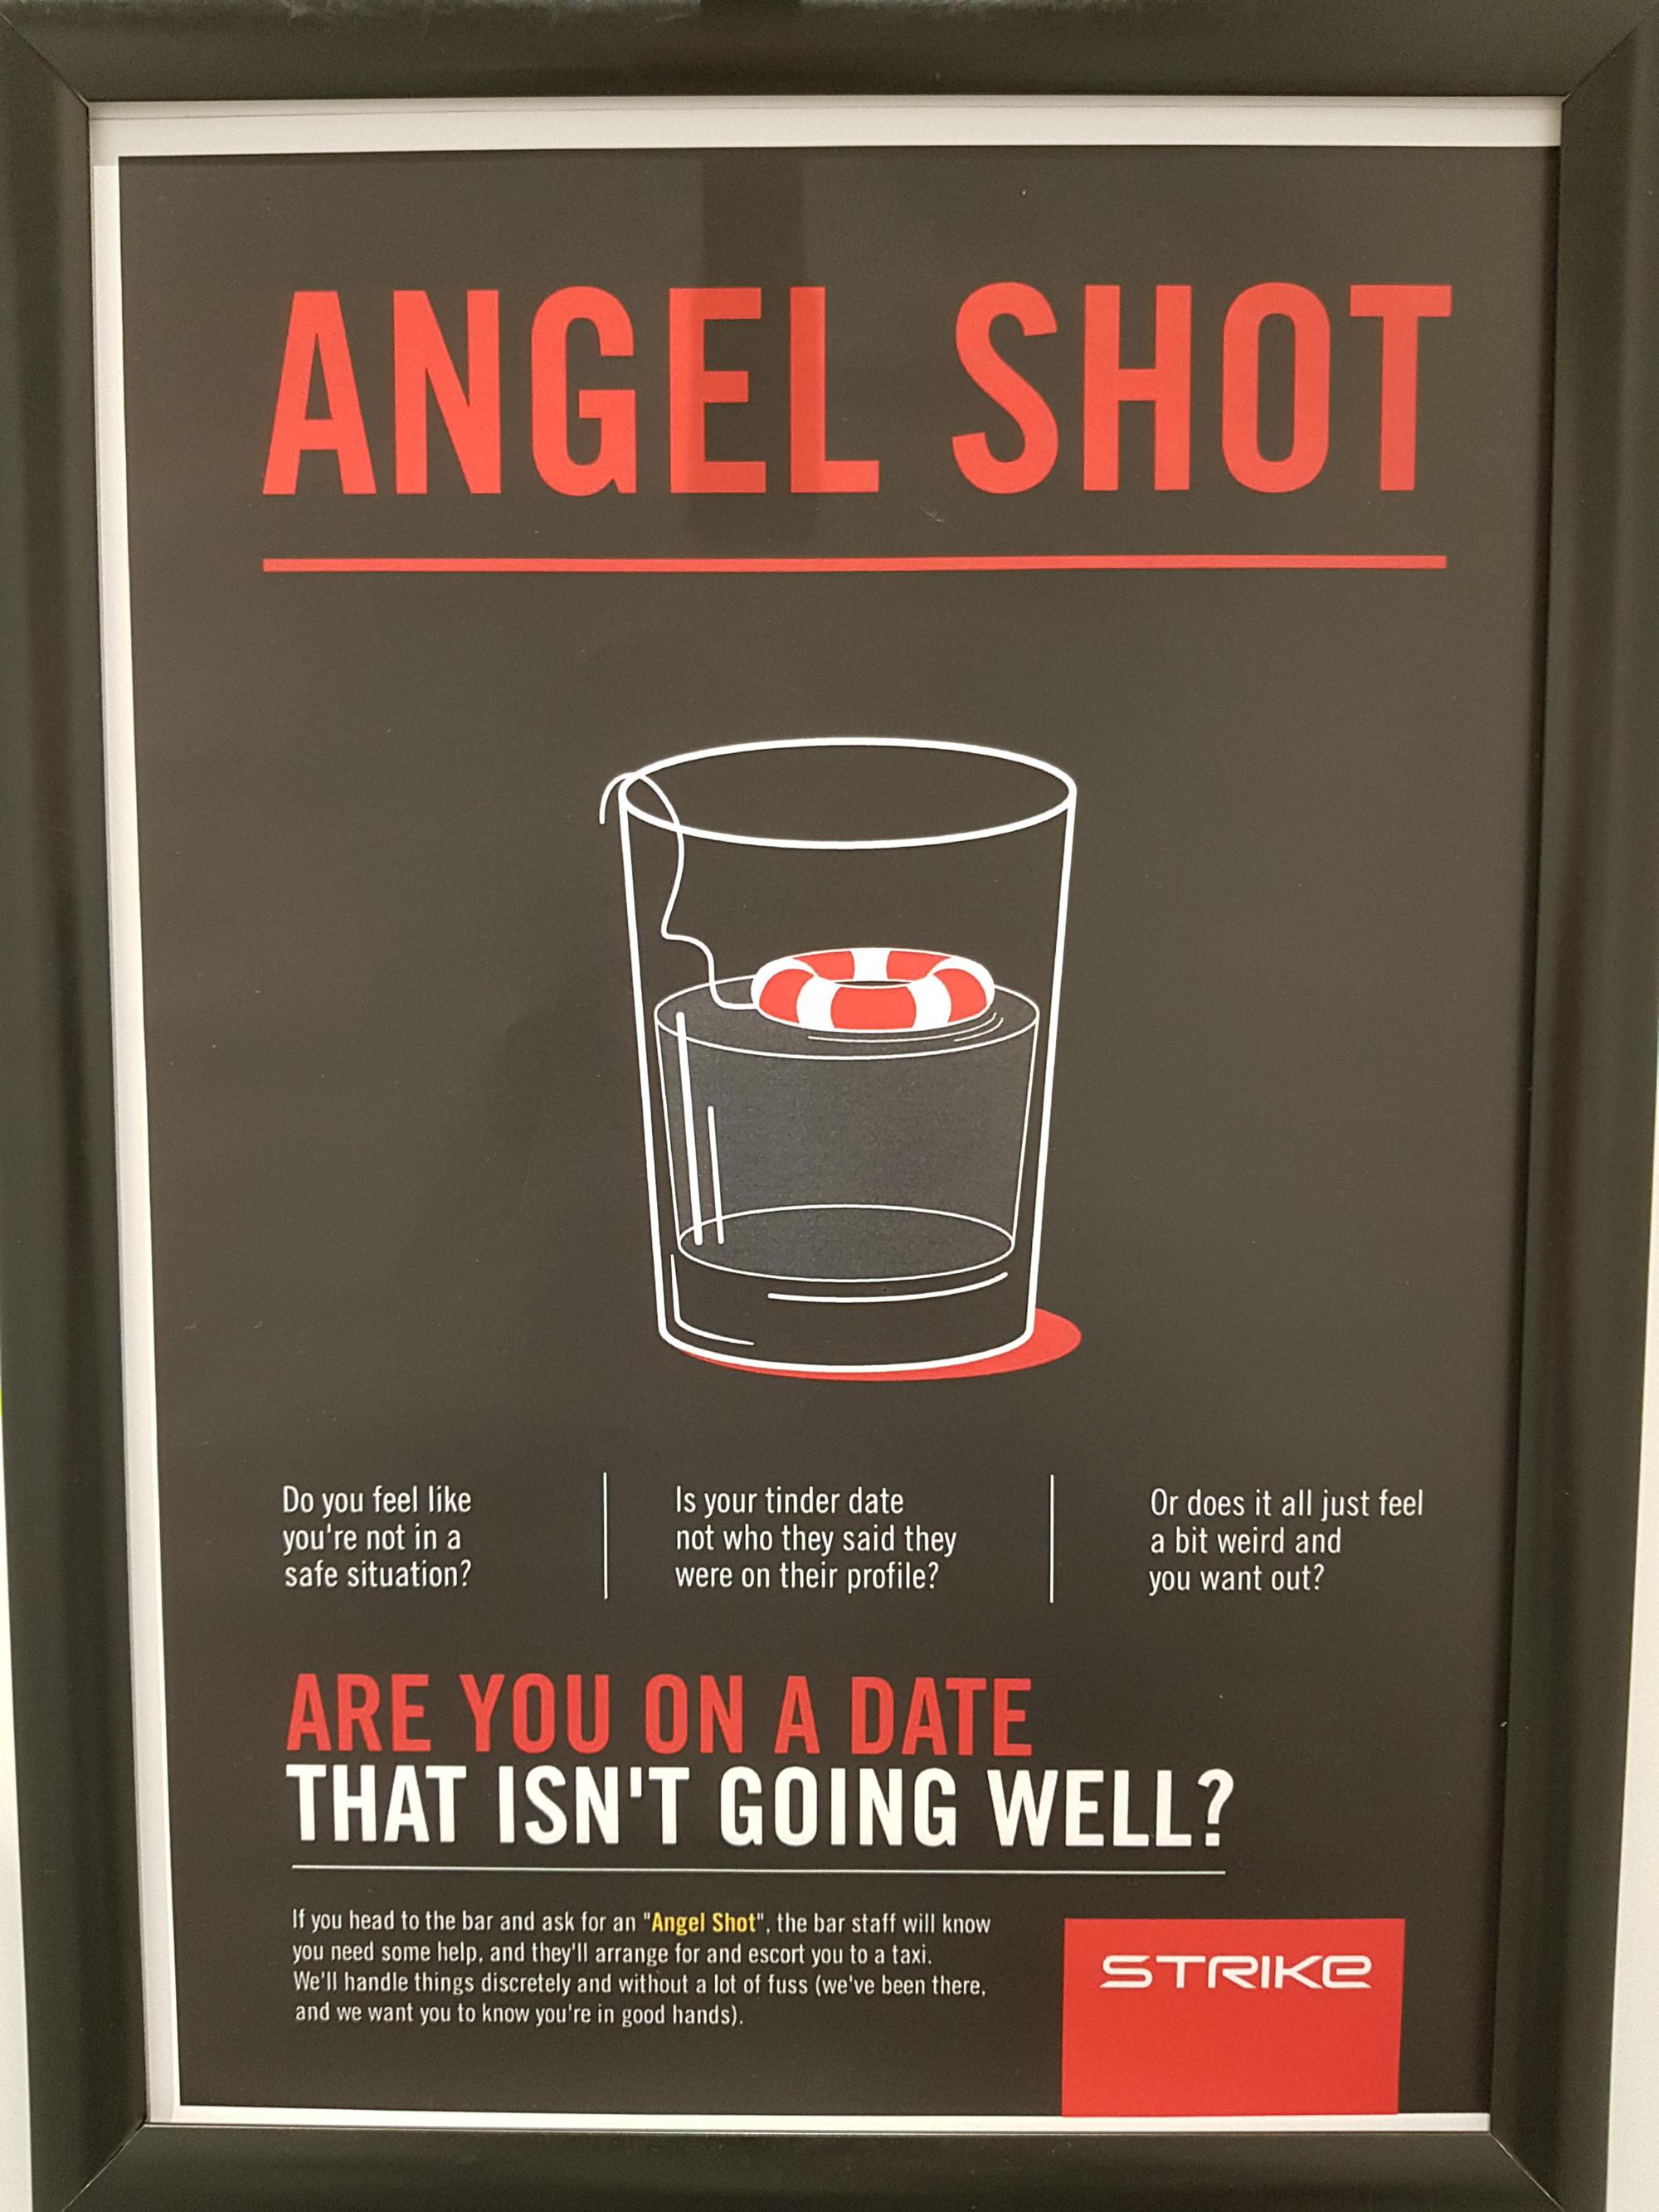 Giải mã Angel Shot: “Thức uống bảo vệ phụ nữ” khỏi bị quấy rối tại các quán bar - Ảnh 2.